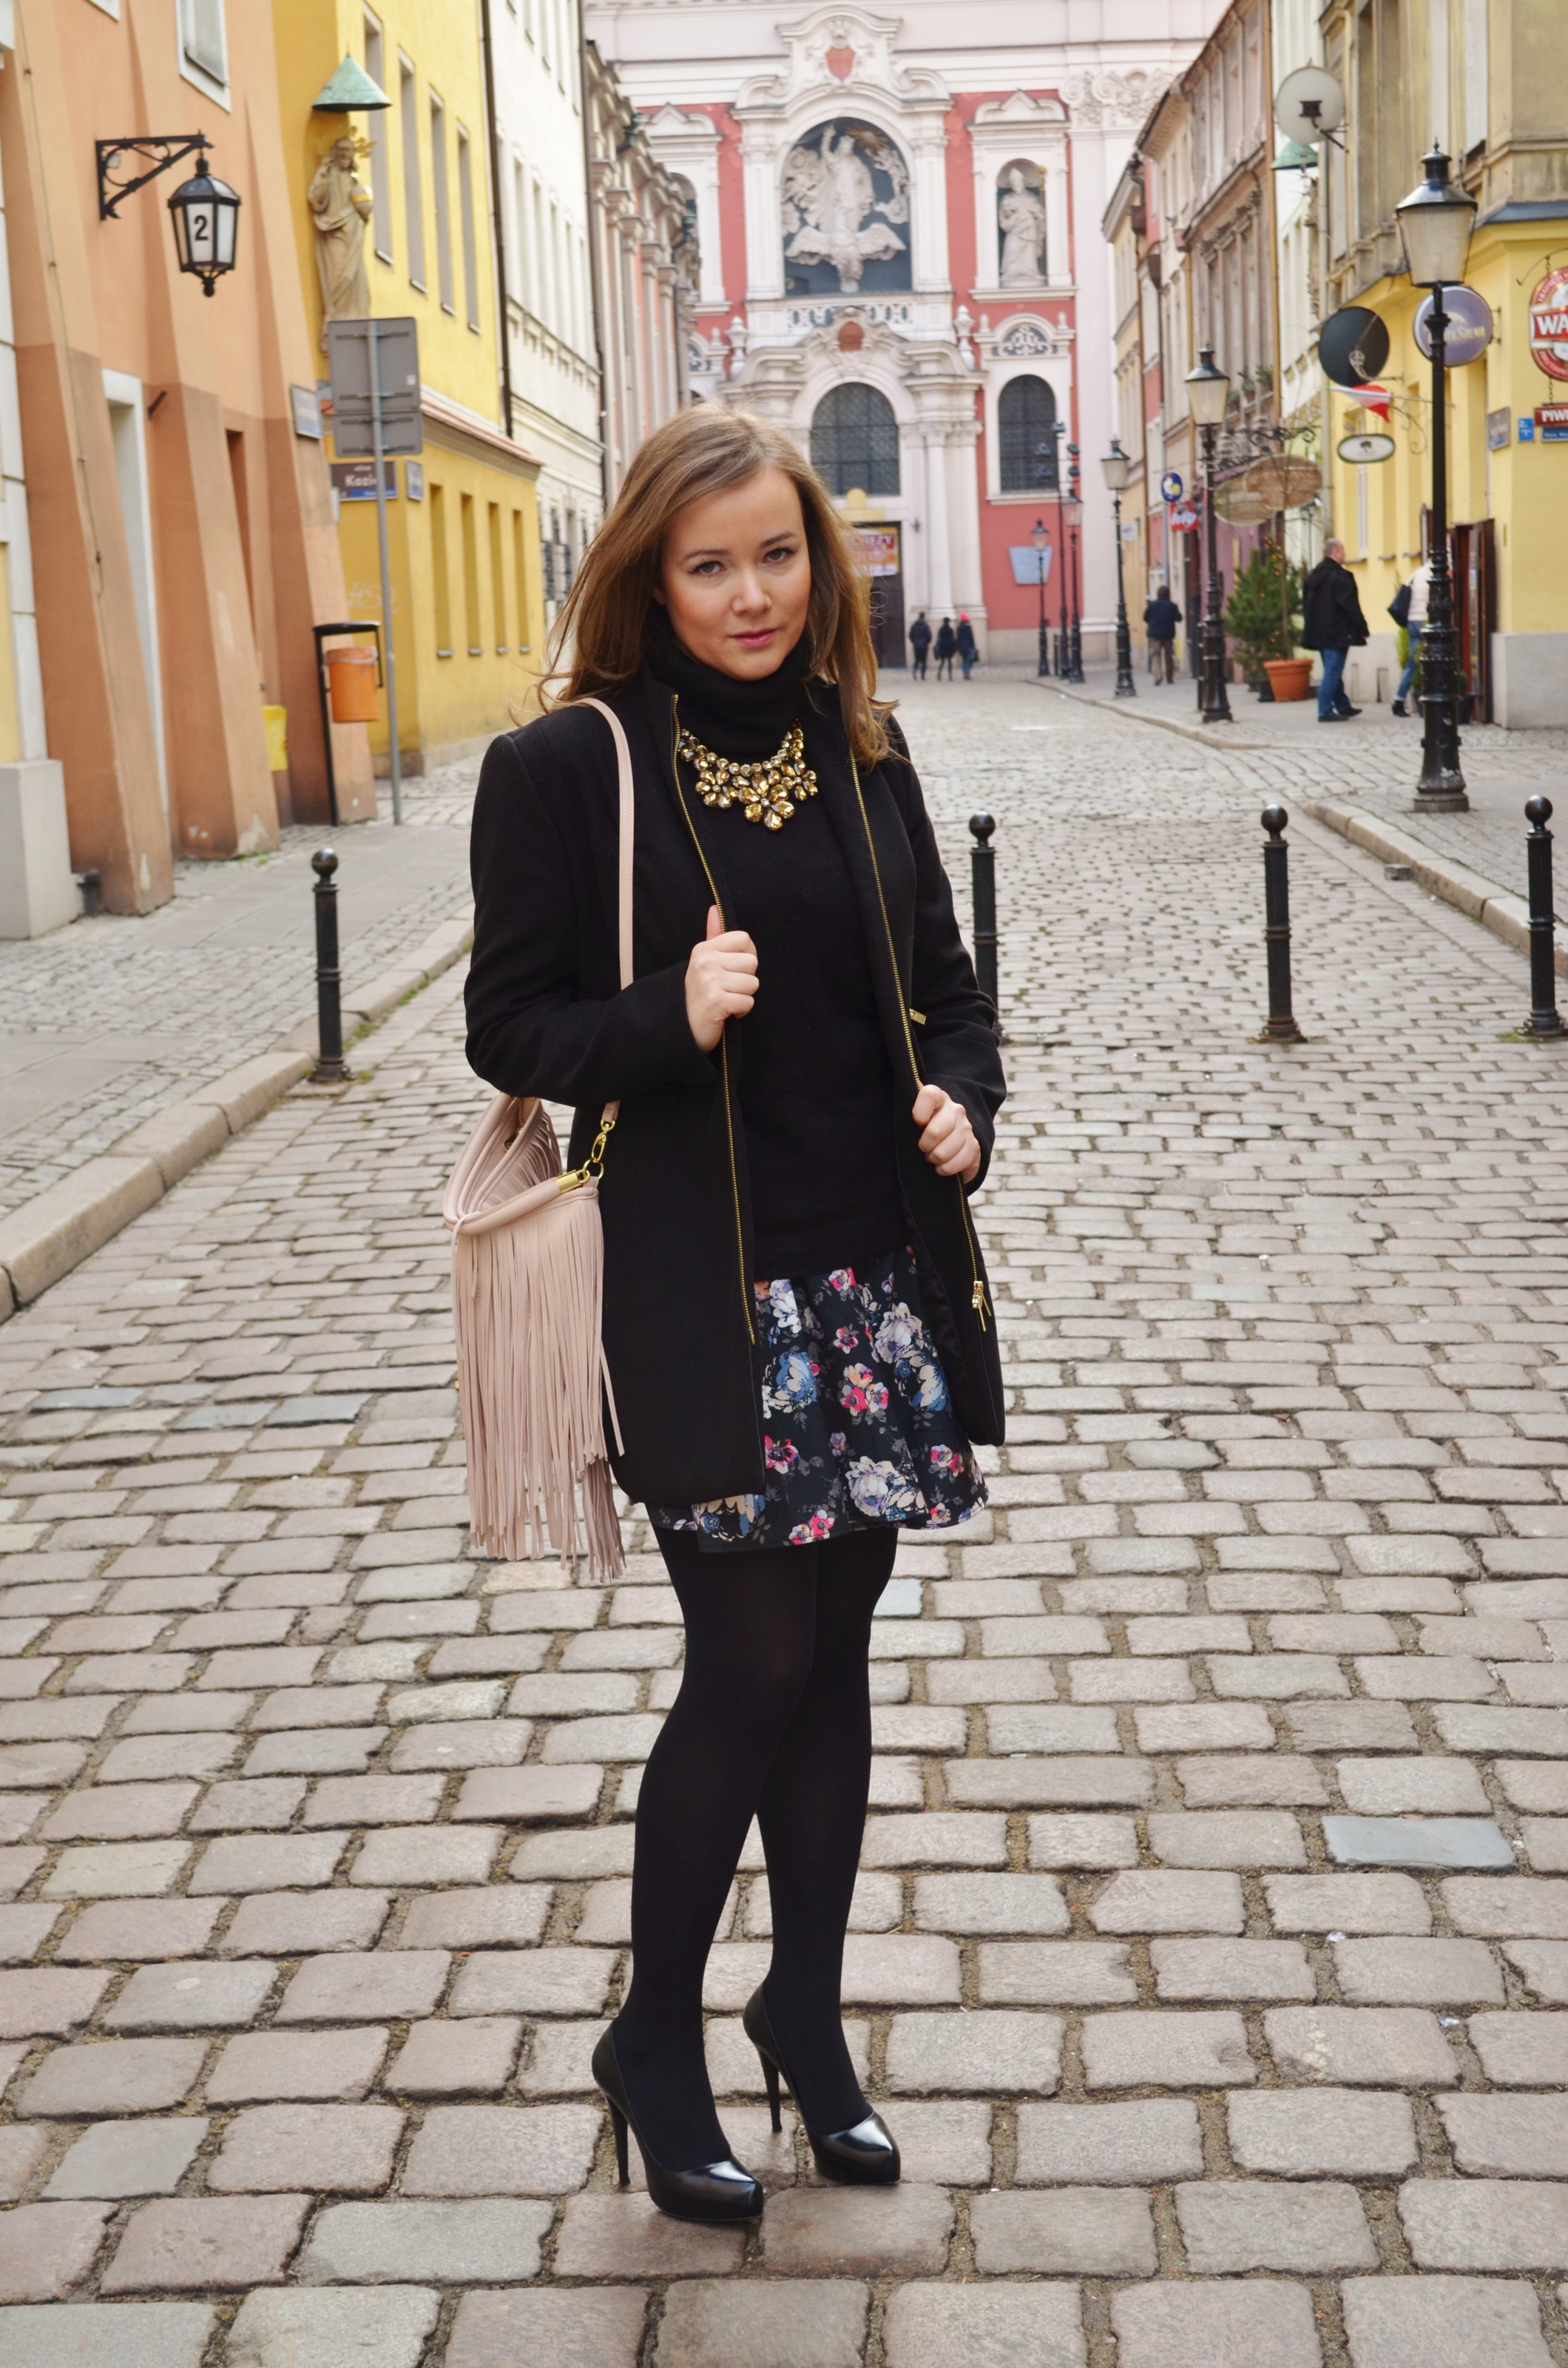 Flower print skirt and fringe bag in the city!